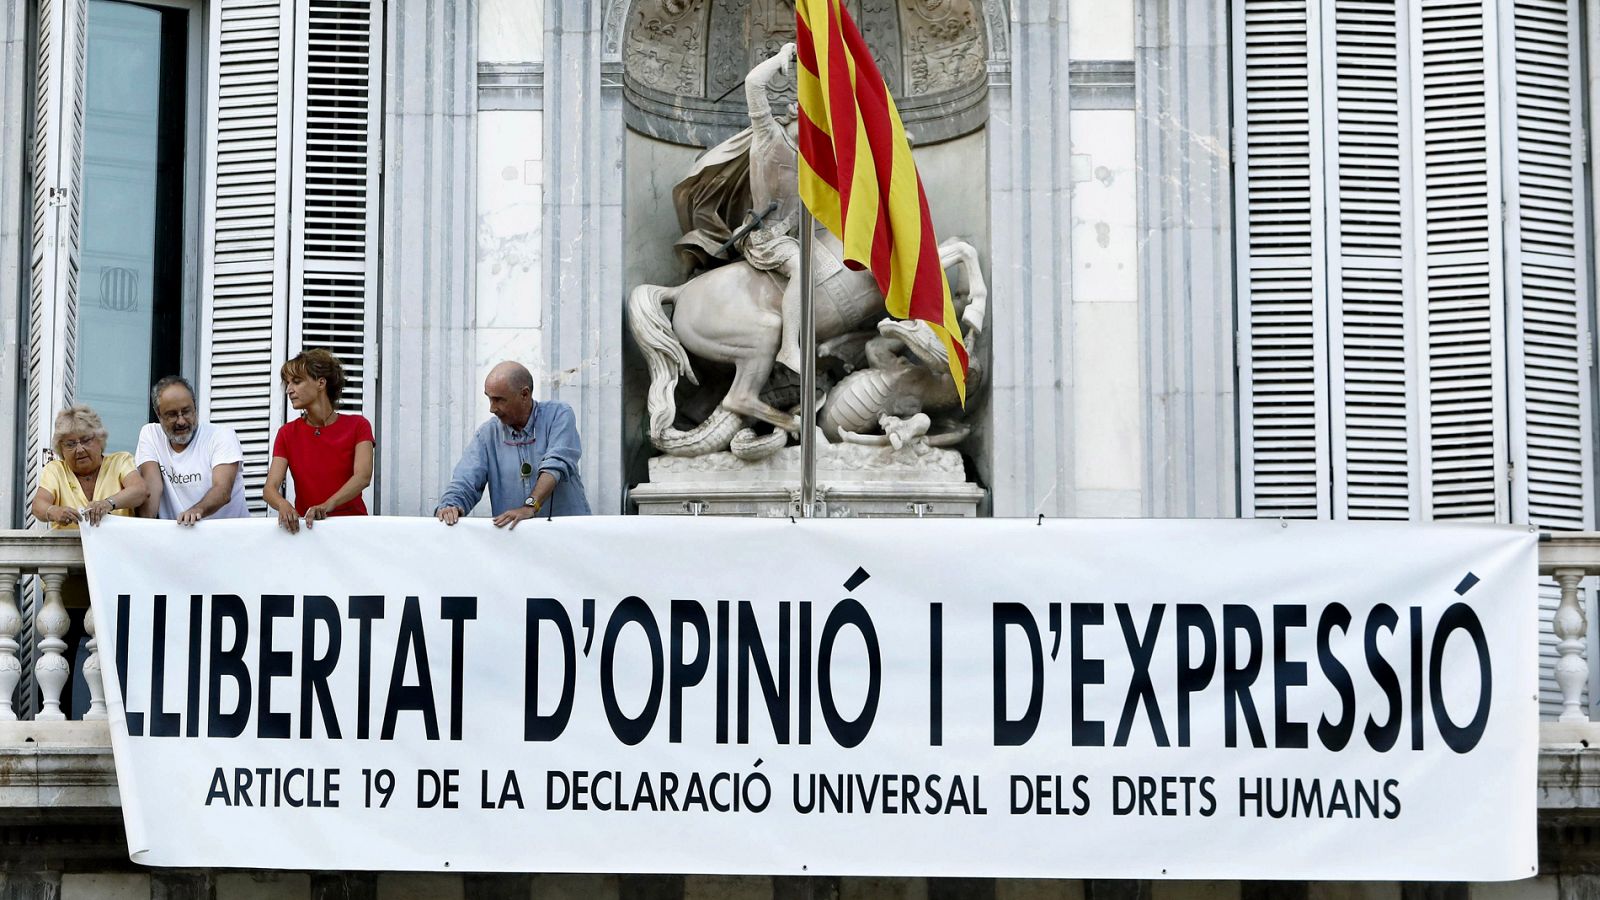 La Generalitat retira la pancarta de apoyo a los políticos presos y coloca otra en favor de la libertad de expresión